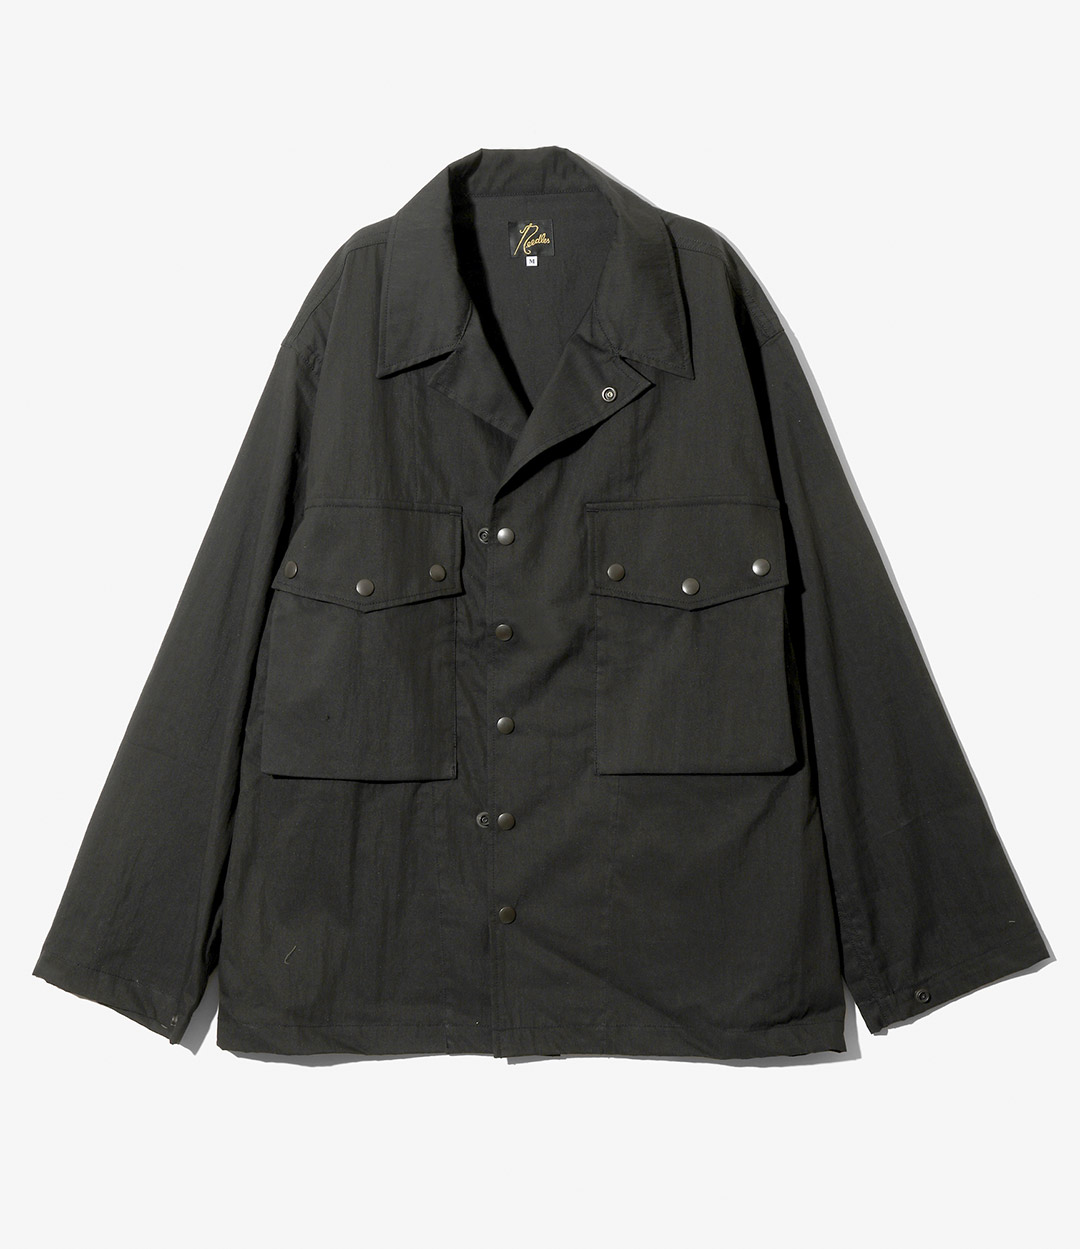 FIELD JACKET - C/N OXFORD CLOTH ¥31,900